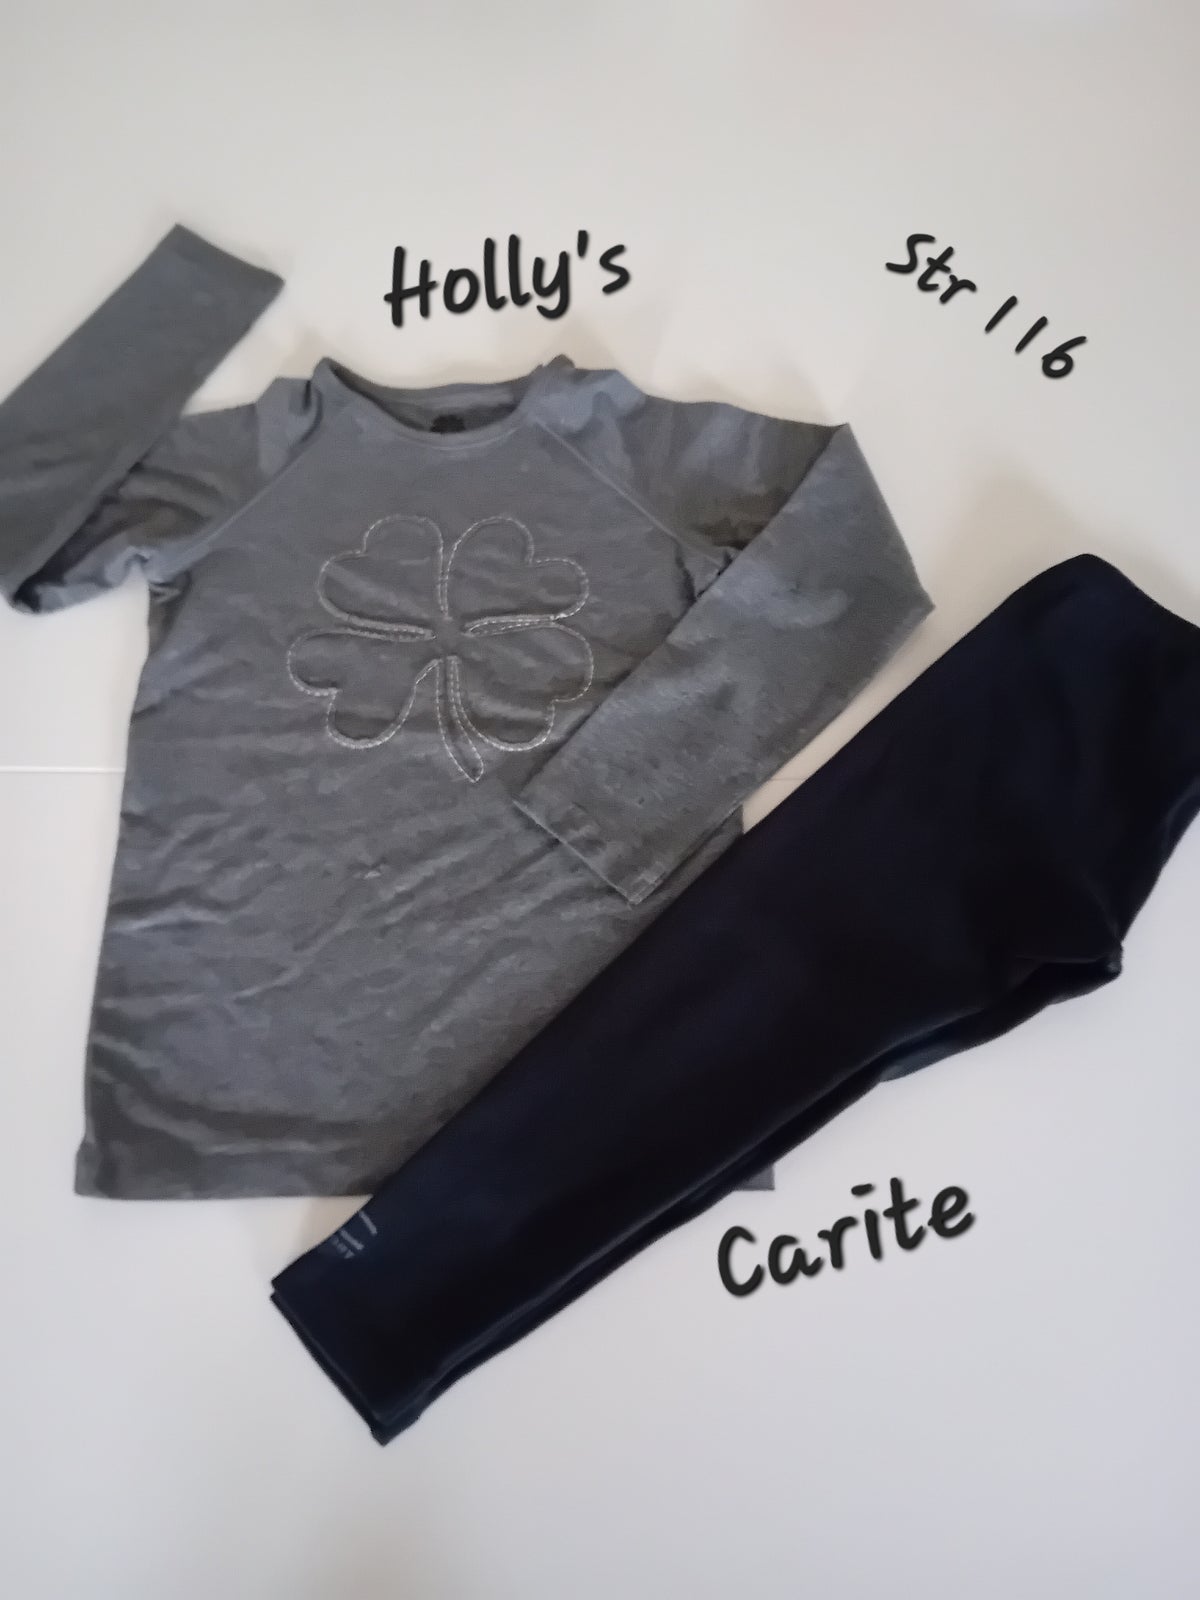 Blandet tøj, Bluse og leggens, Holly's og Carite